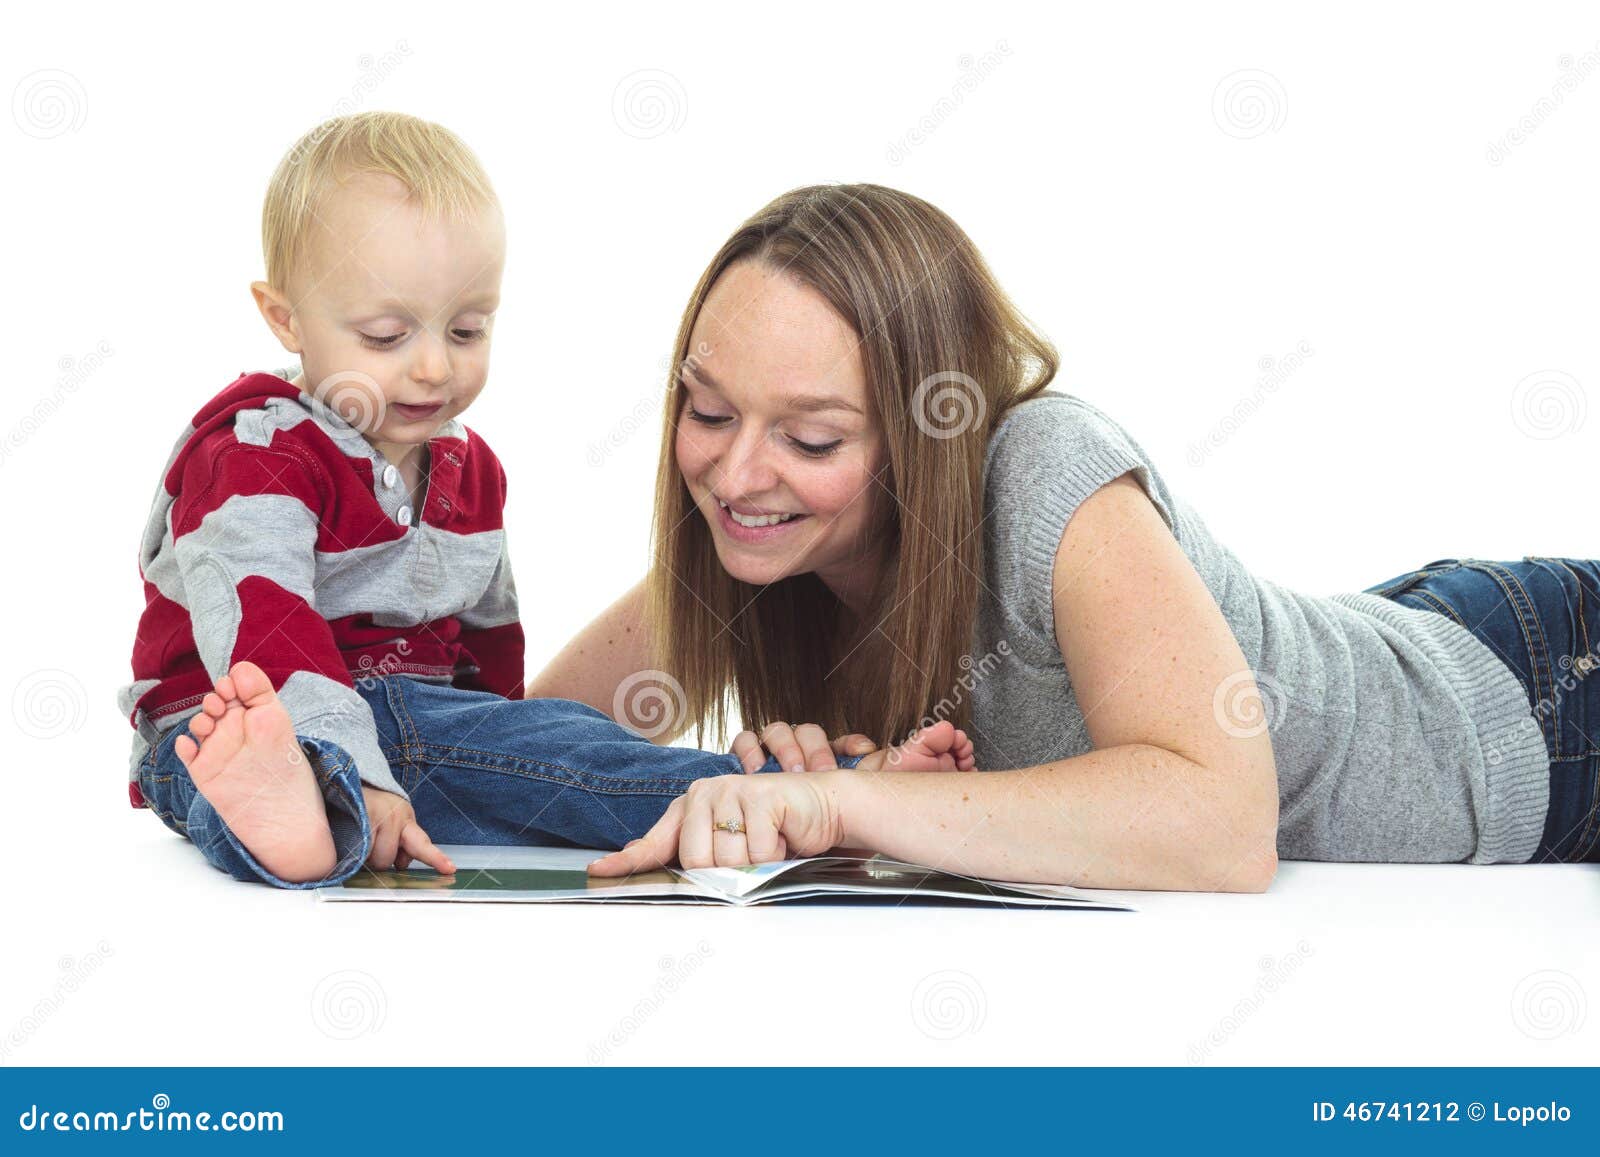 Прочтение у матери. Фото мамы, читающей трехлетнему ребенку. Читать мама лизала